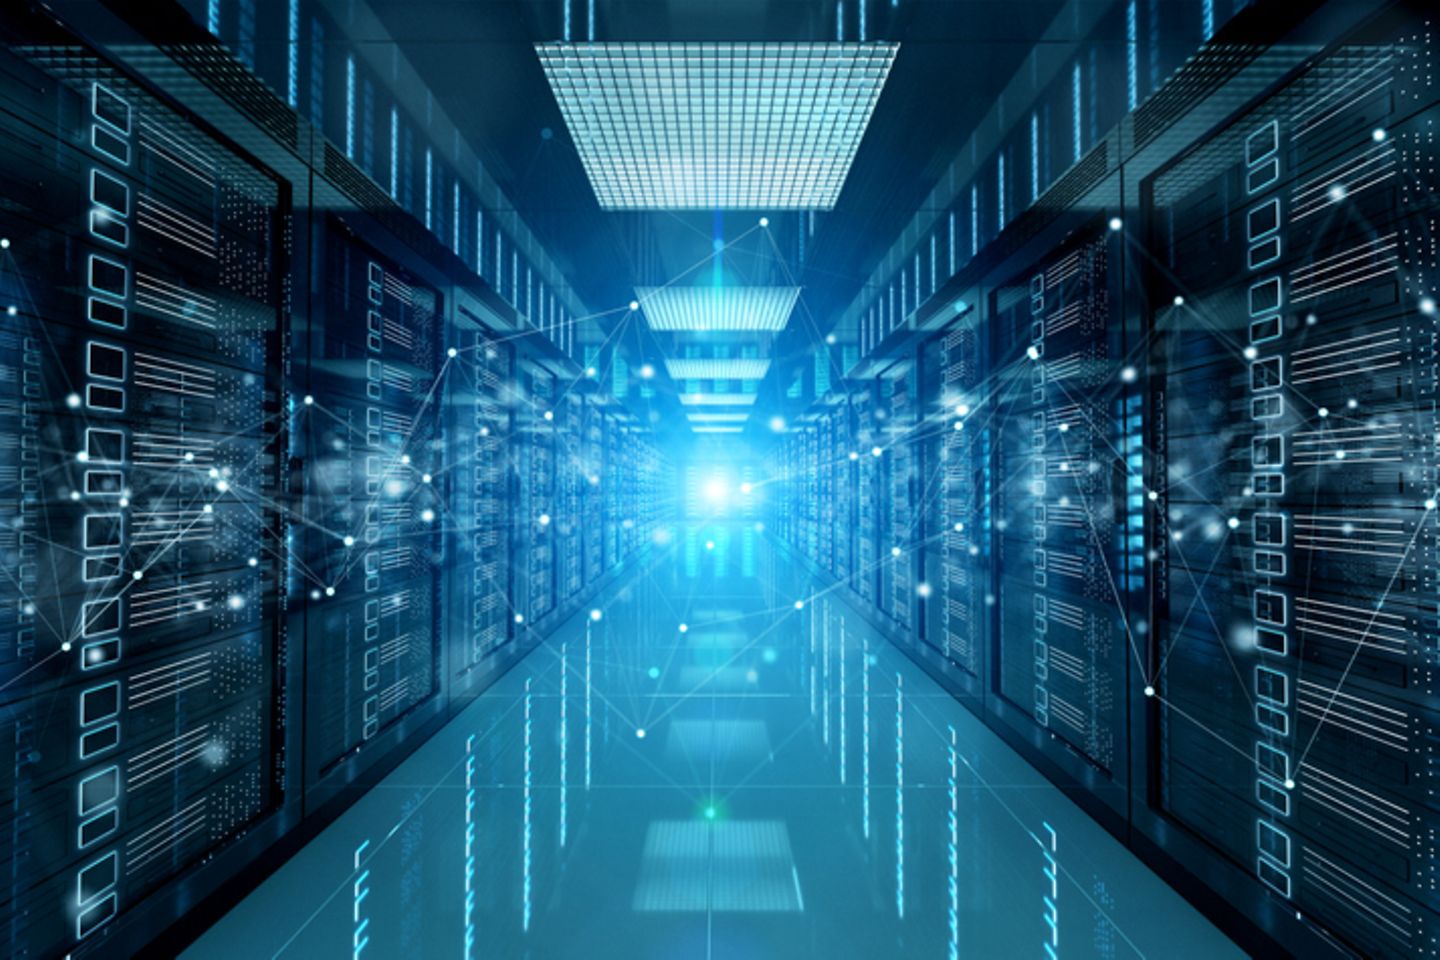 Ein Serverraum mit einem virtuellen Verbindungsnetzwerk, am Ende des Gangs ein blaues Licht.